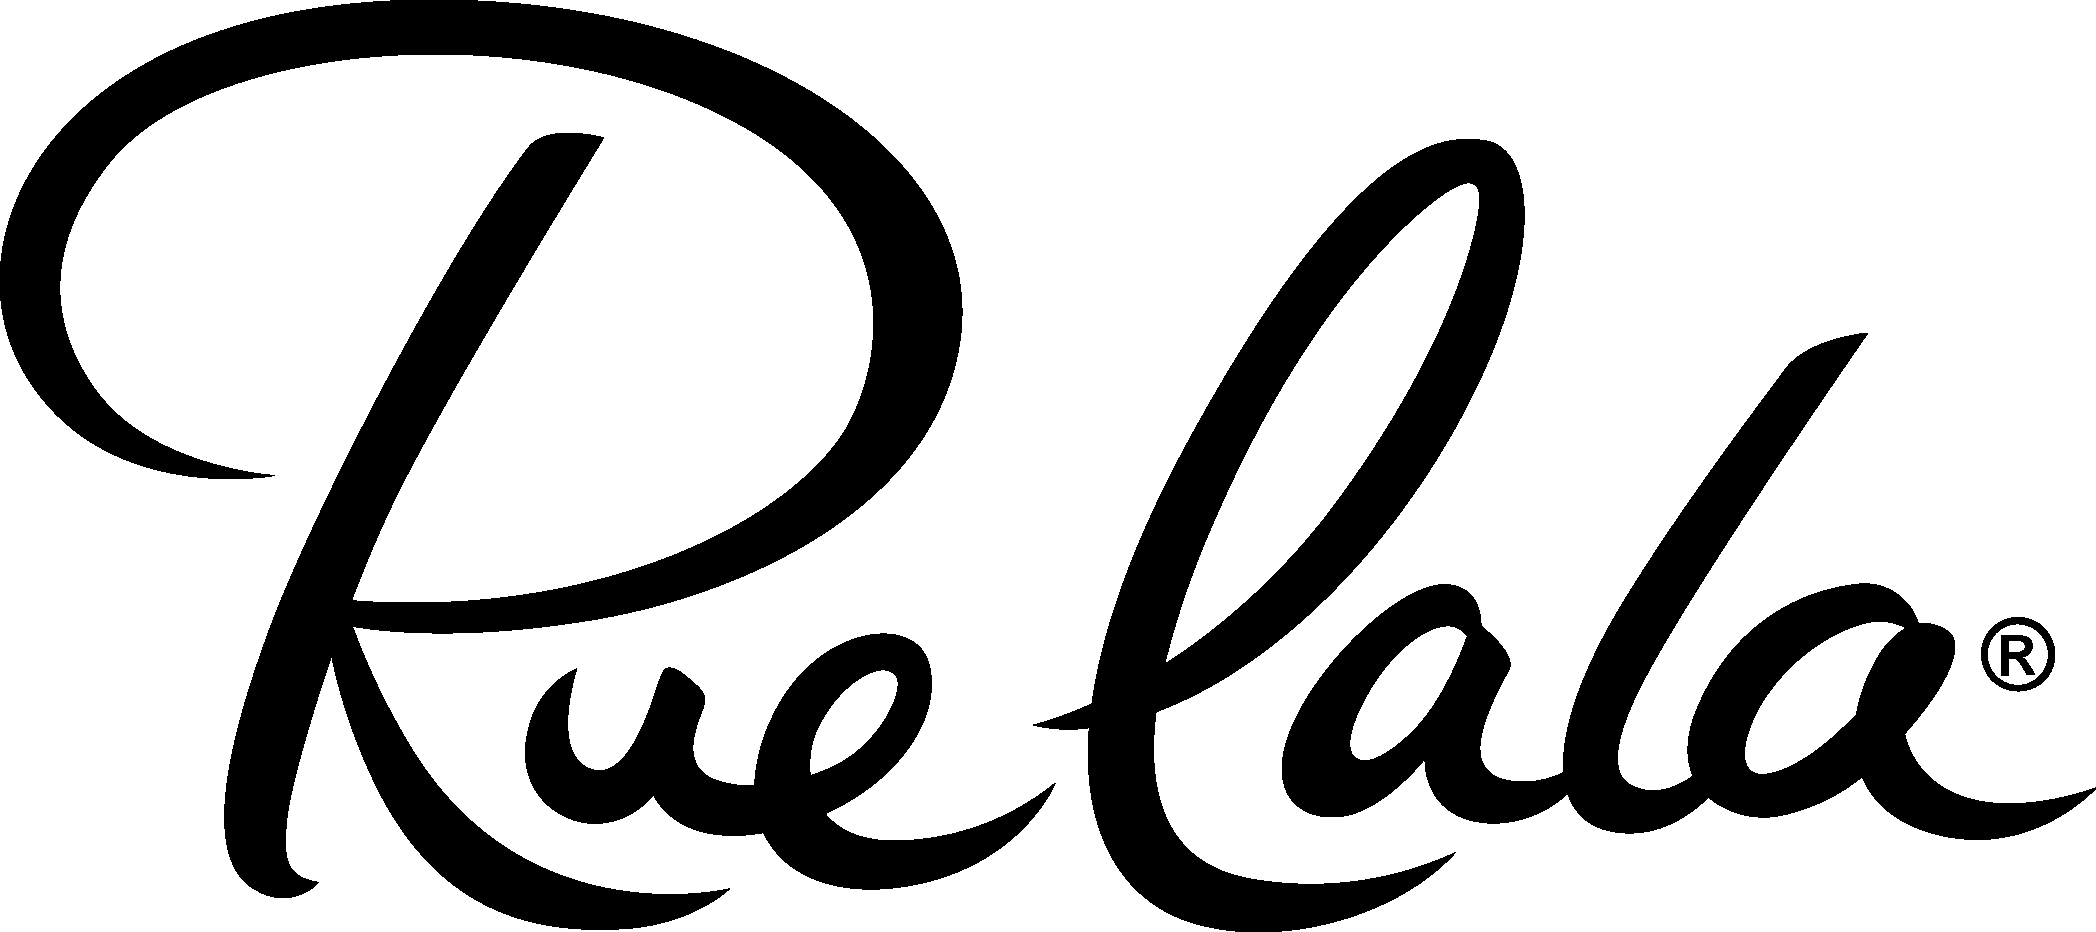 Rue La La Logo png